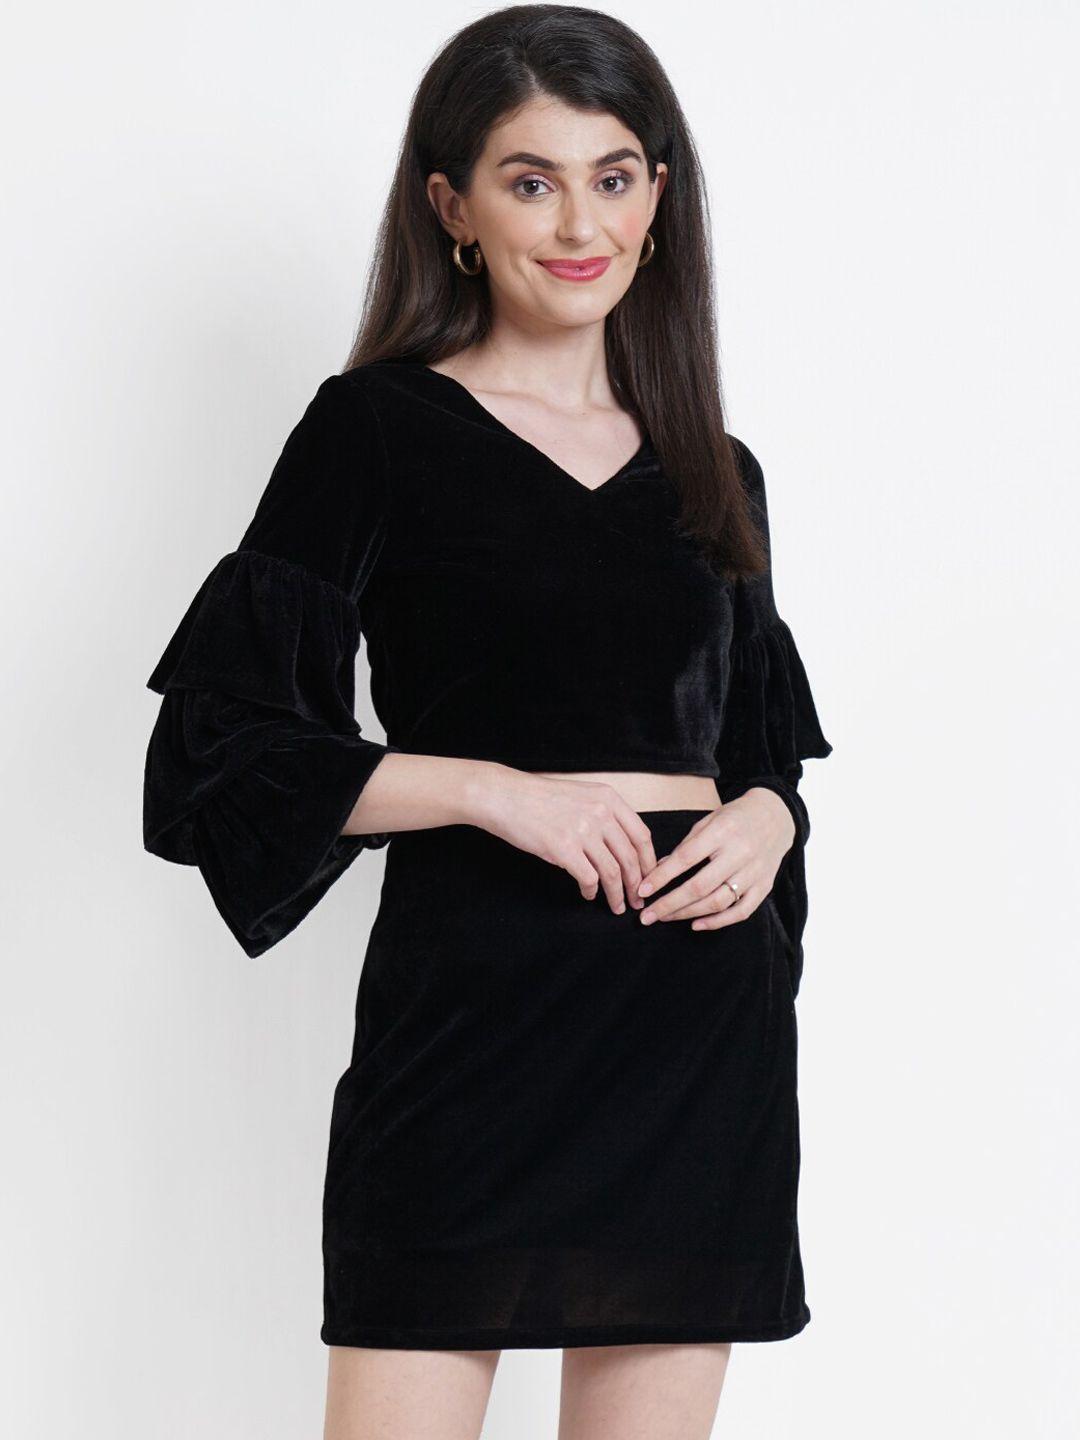 dodo & moa black velvet sheath dress